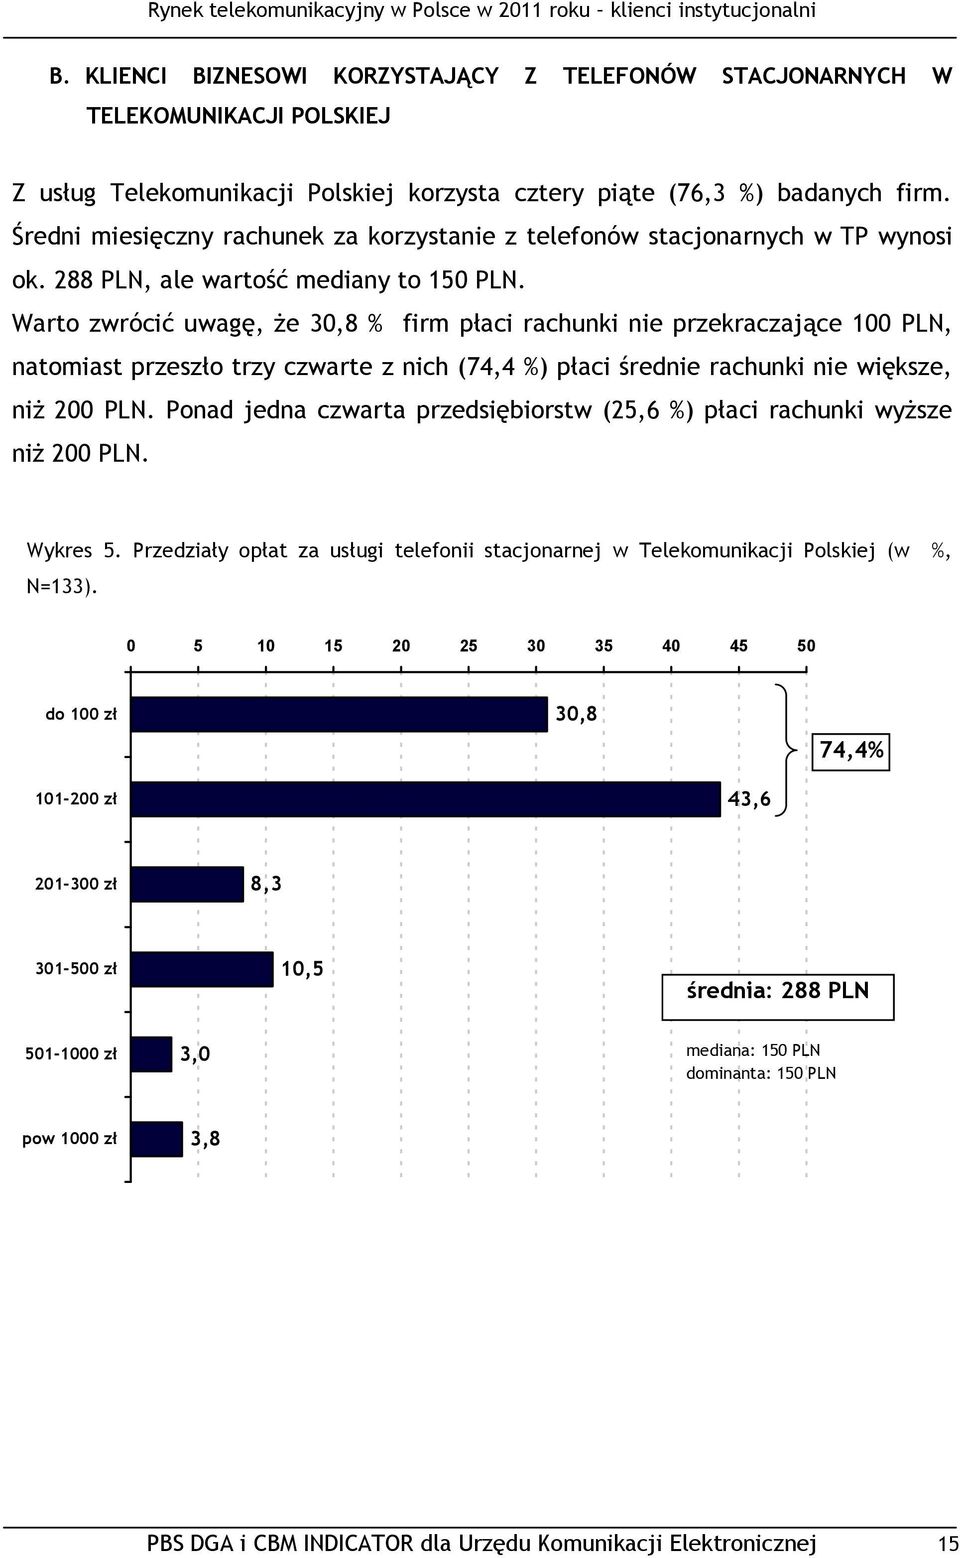 Warto zwrócić uwagę, że 30,8 % firm płaci rachunki nie przekraczające 100 PLN, natomiast przeszło trzy czwarte z nich (74,4 %) płaci średnie rachunki nie większe, niż 200 PLN.